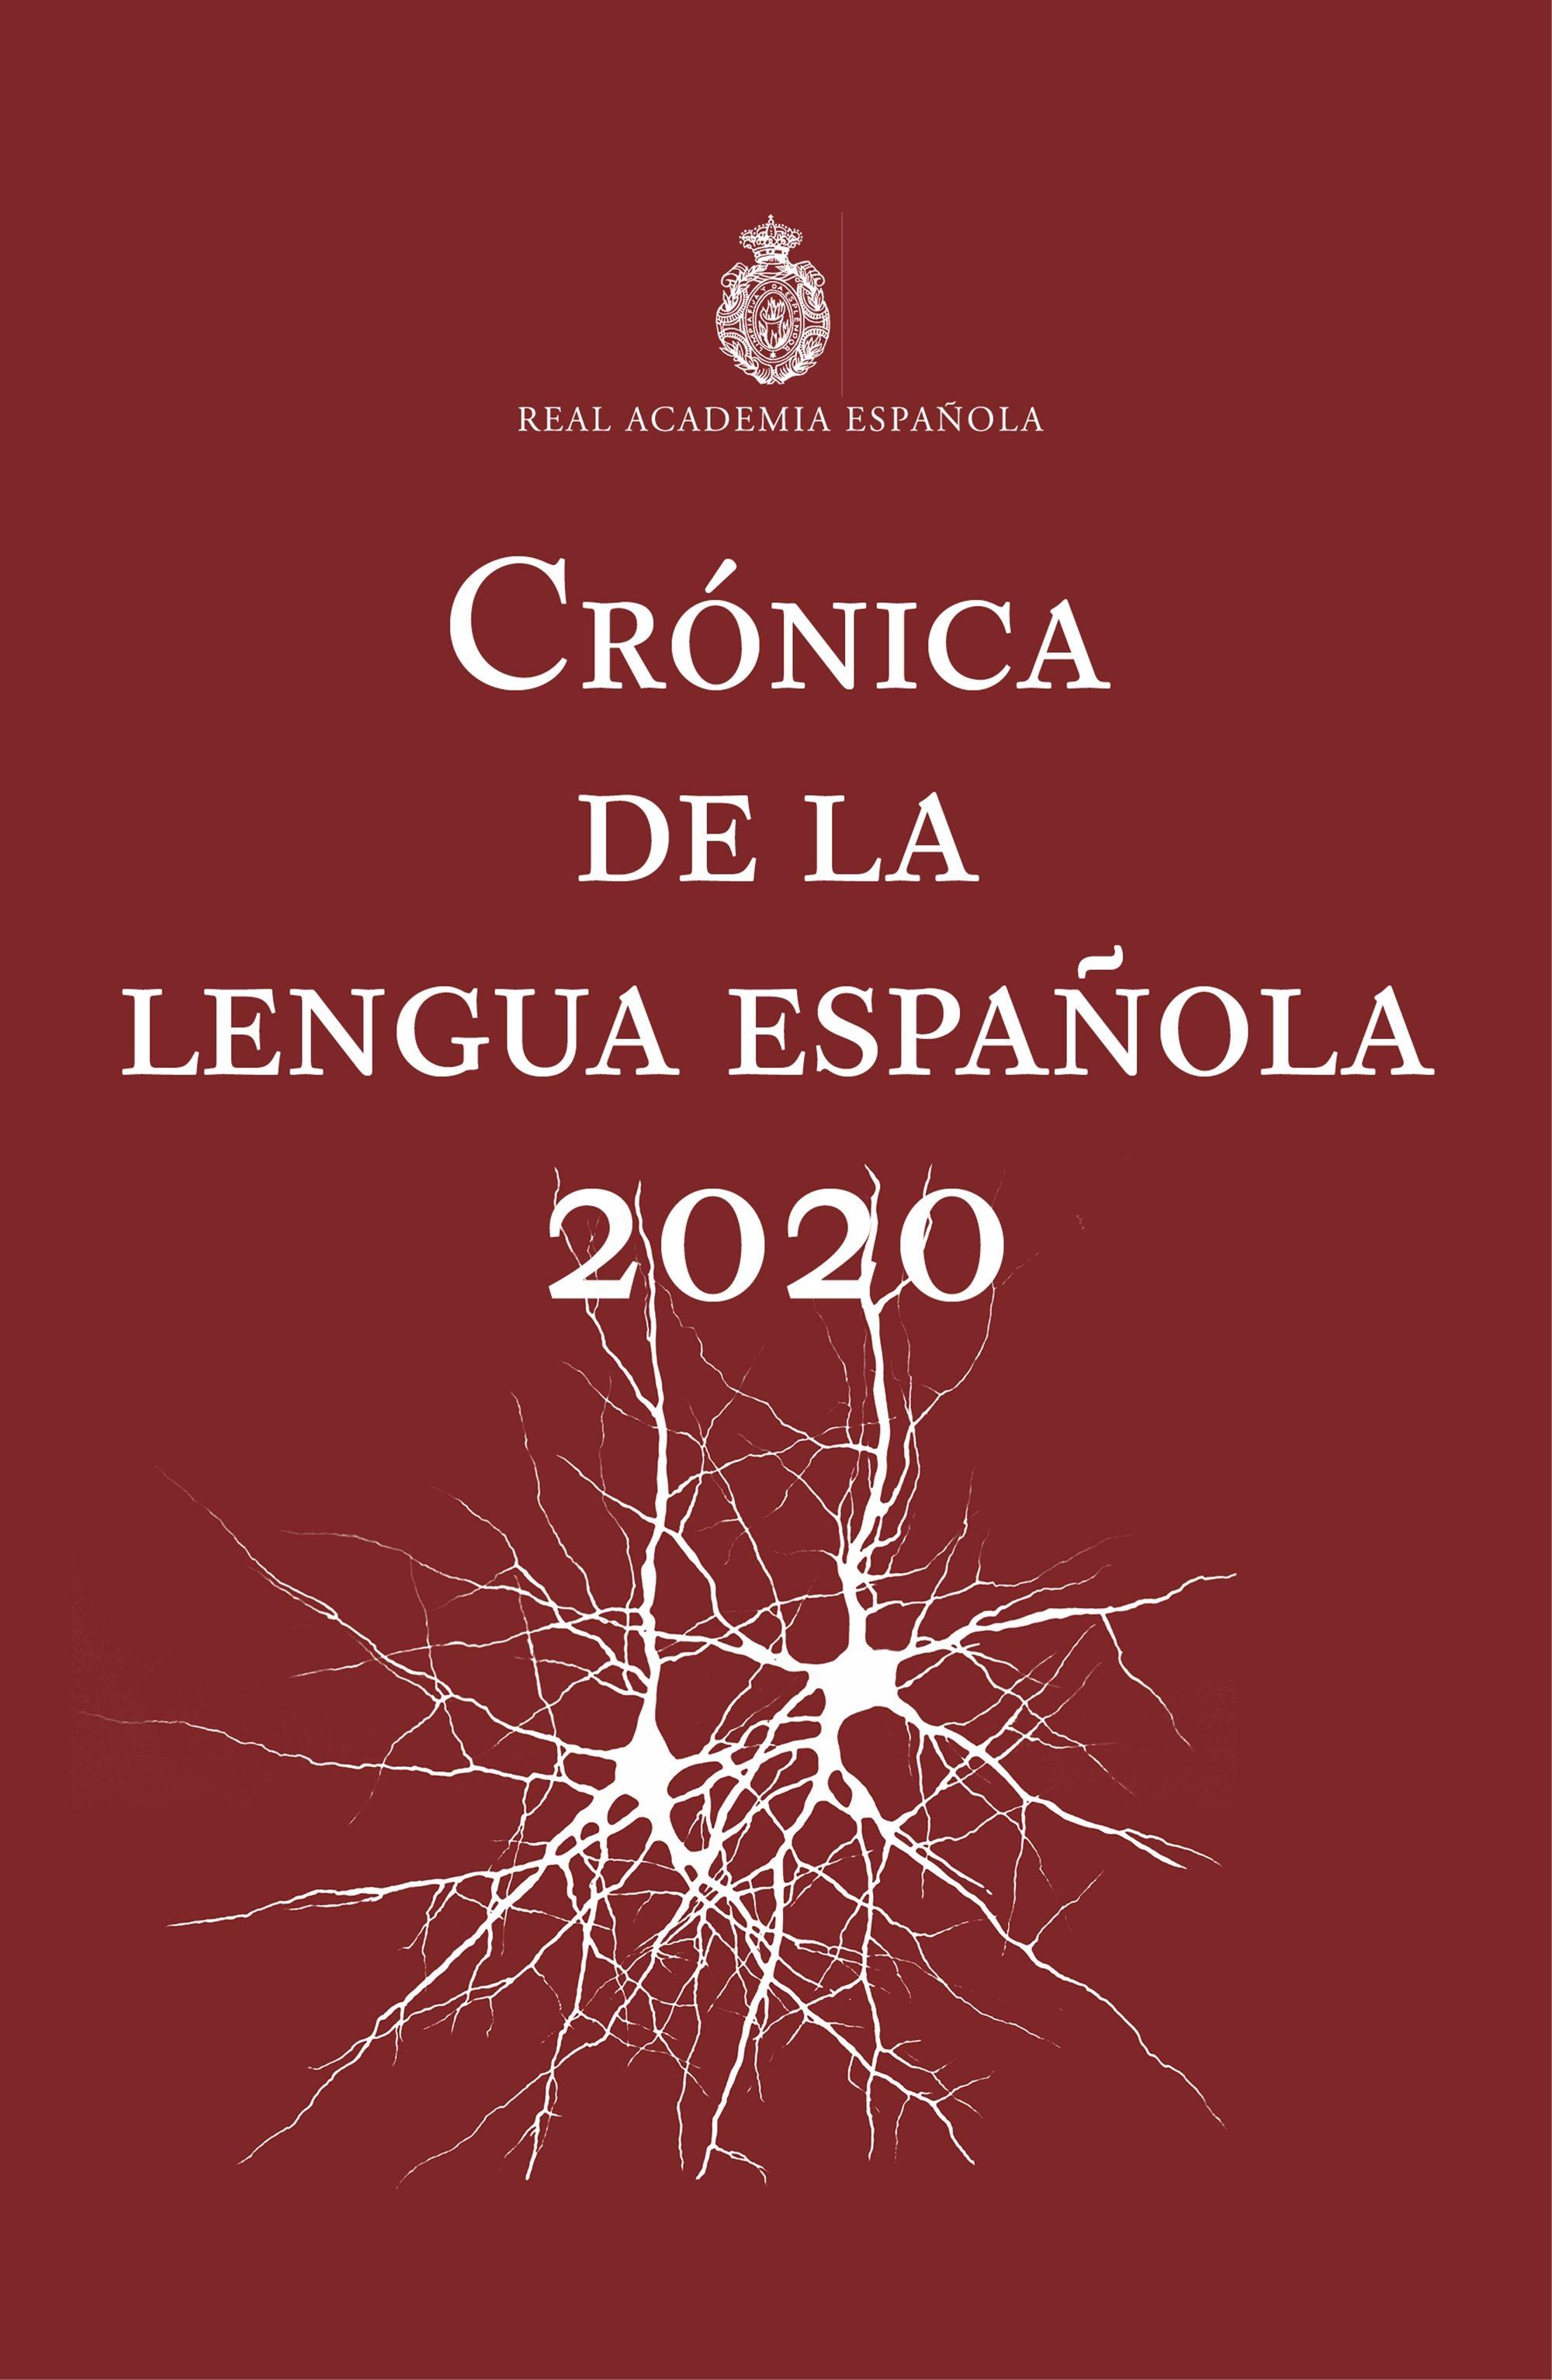 Crónica de la lengua española "2020"